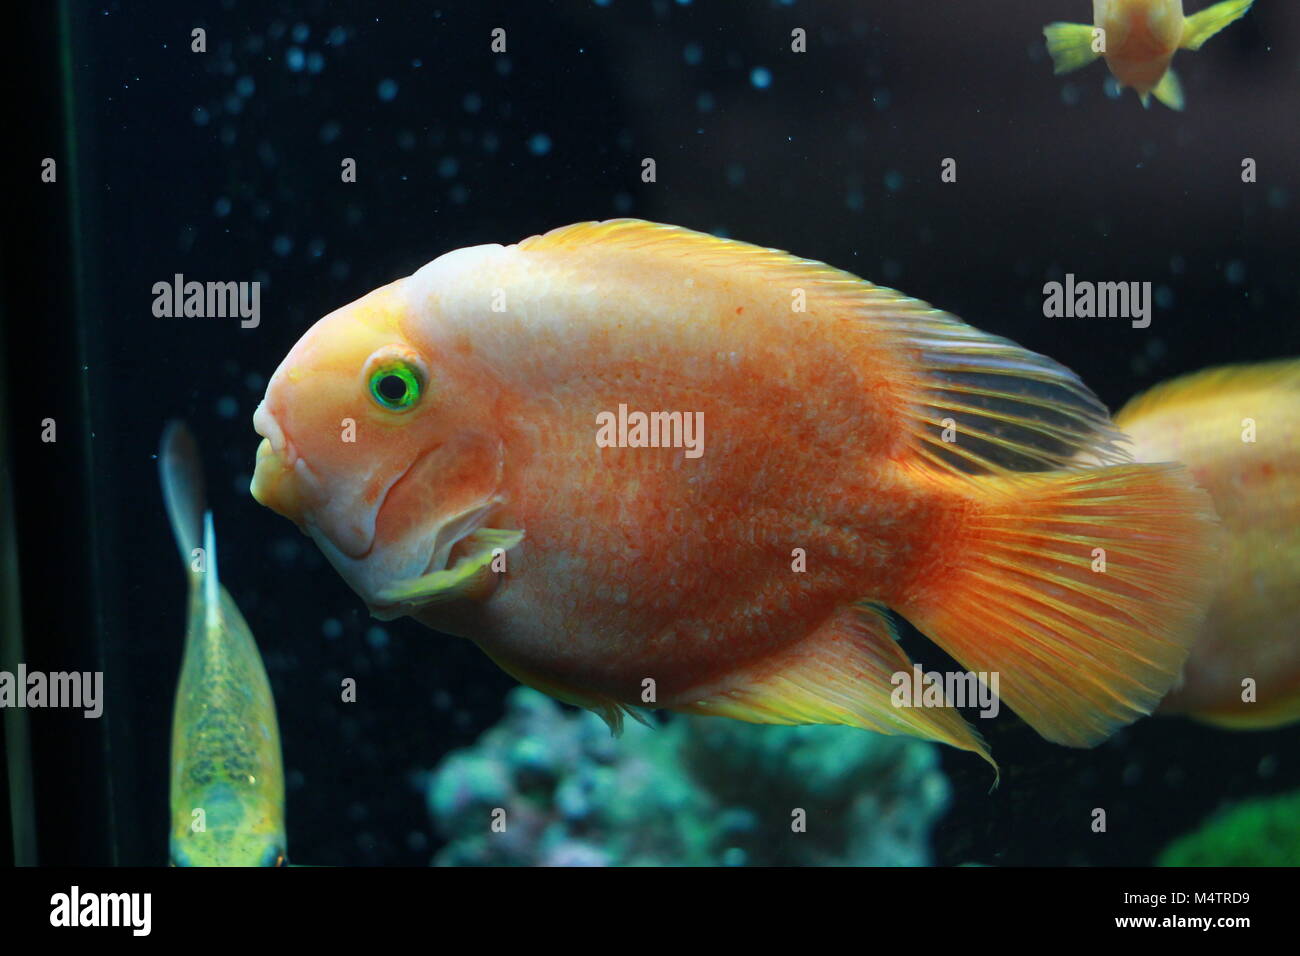 Blood parrot cichlid fish in aquarium Stock Photo